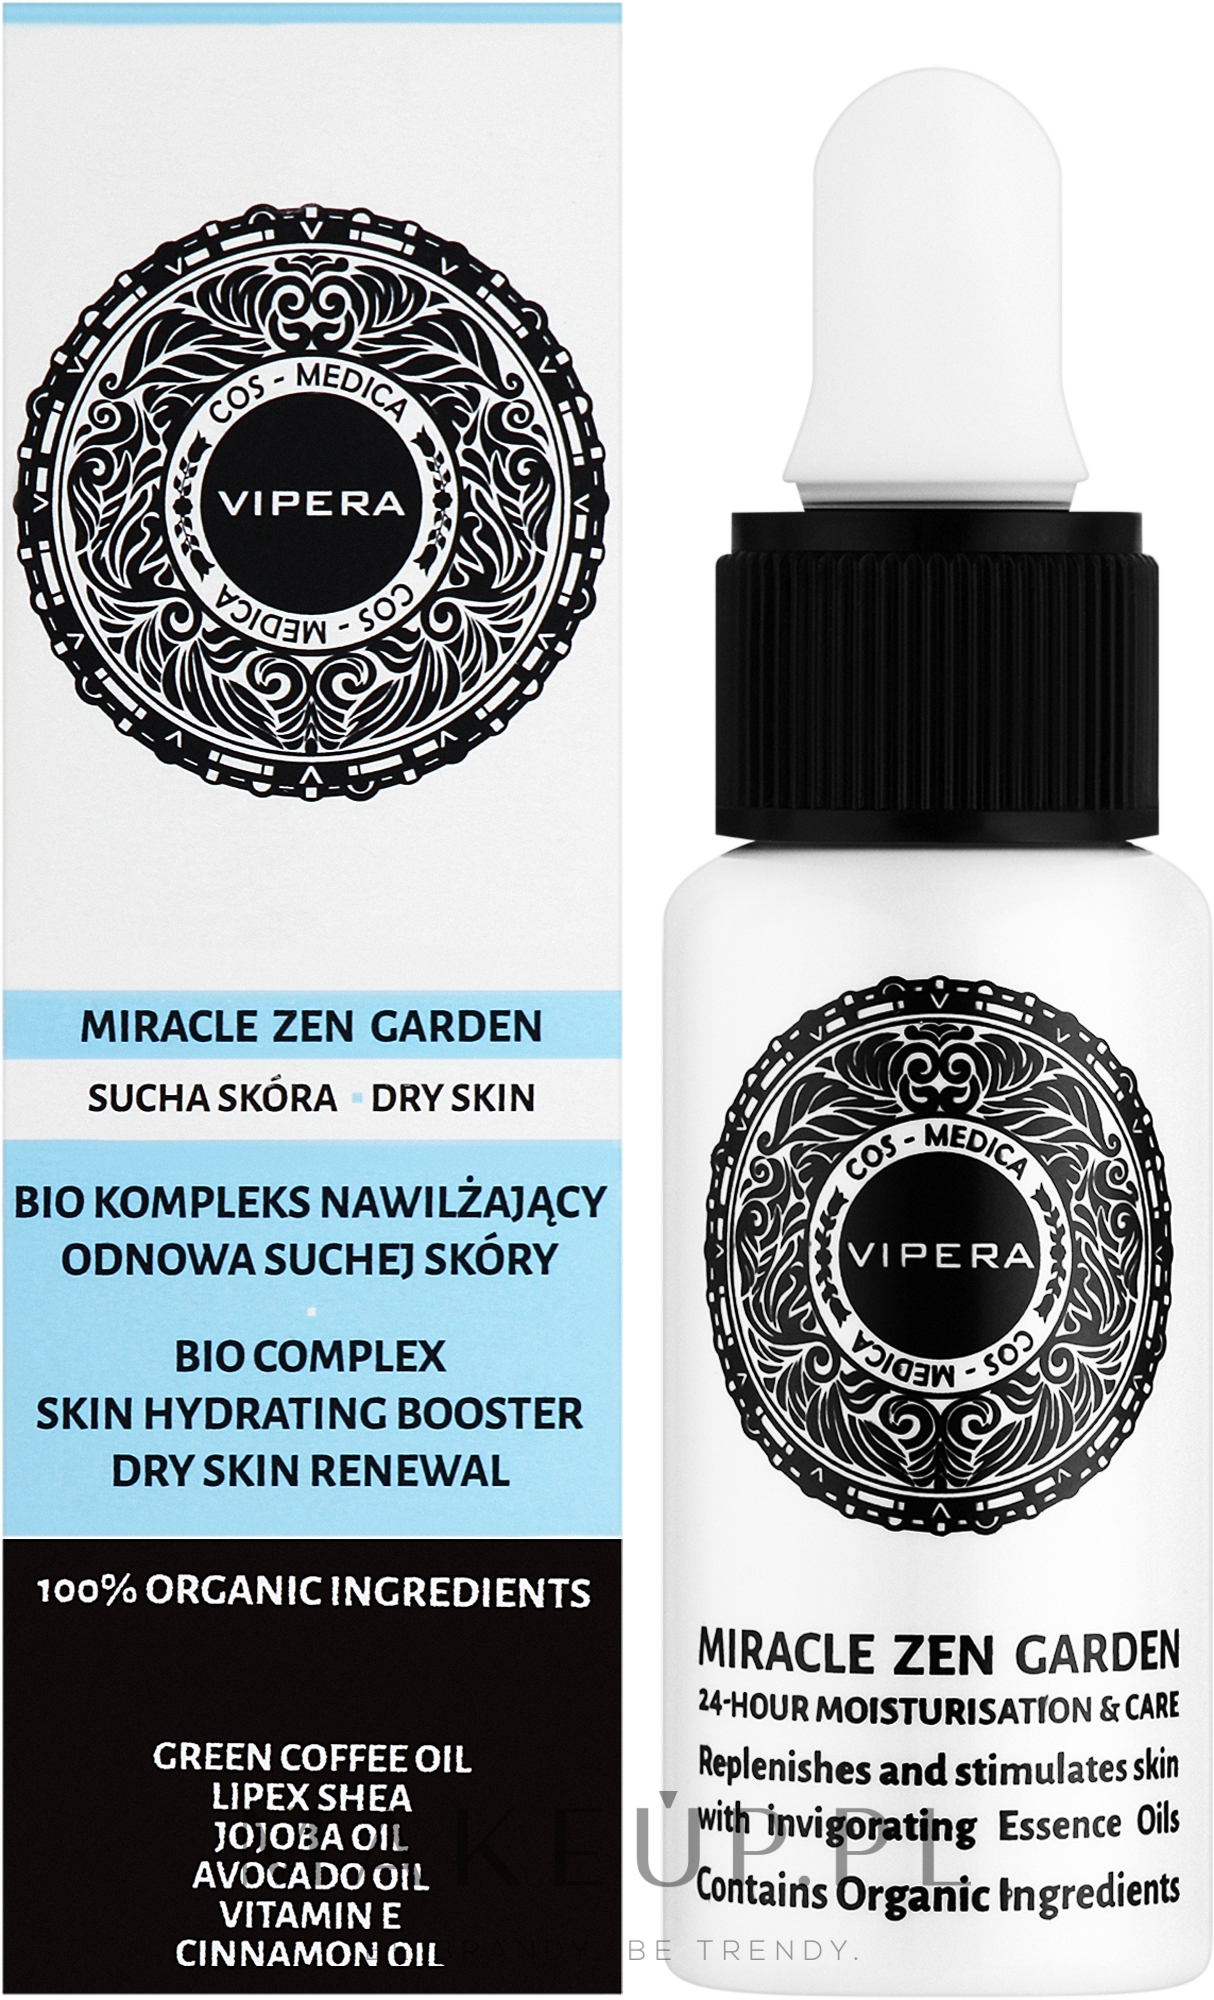 Biokompleks nawilżający Odnowa suchej skóry - Vipera Cos-Medica Miracle Zen Garden Bio-Complex Skin Hydrating Booster Dry Skin Renewal — Zdjęcie 20 ml